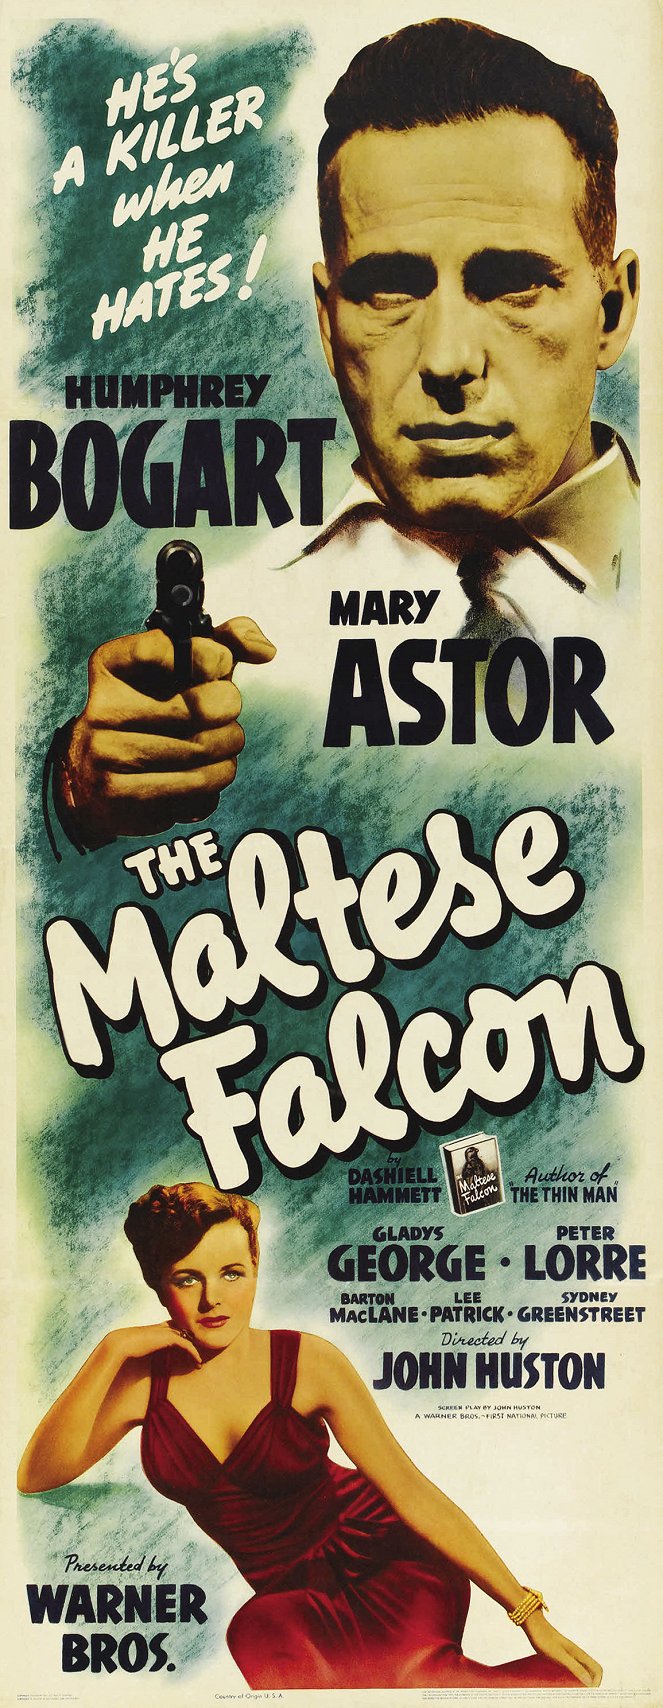 The Maltese Falcon - Posters